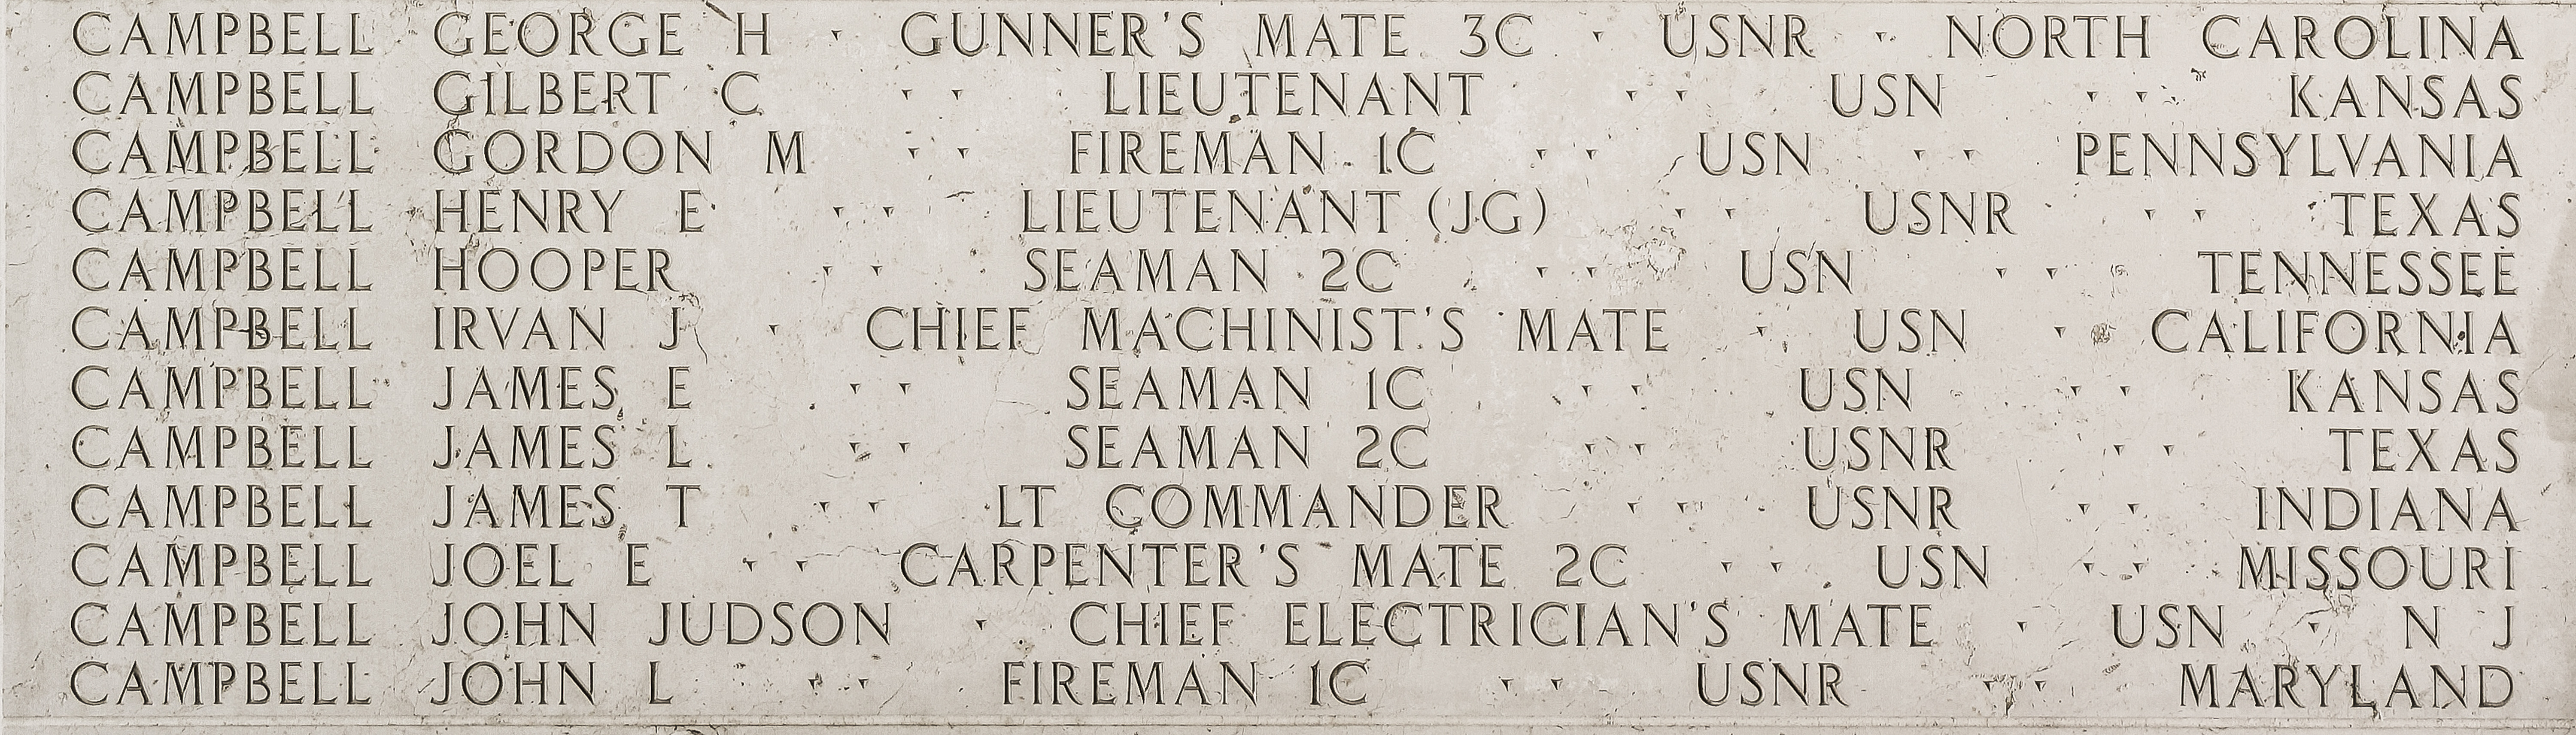 George H. Campbell, Gunner's Mate Third Class